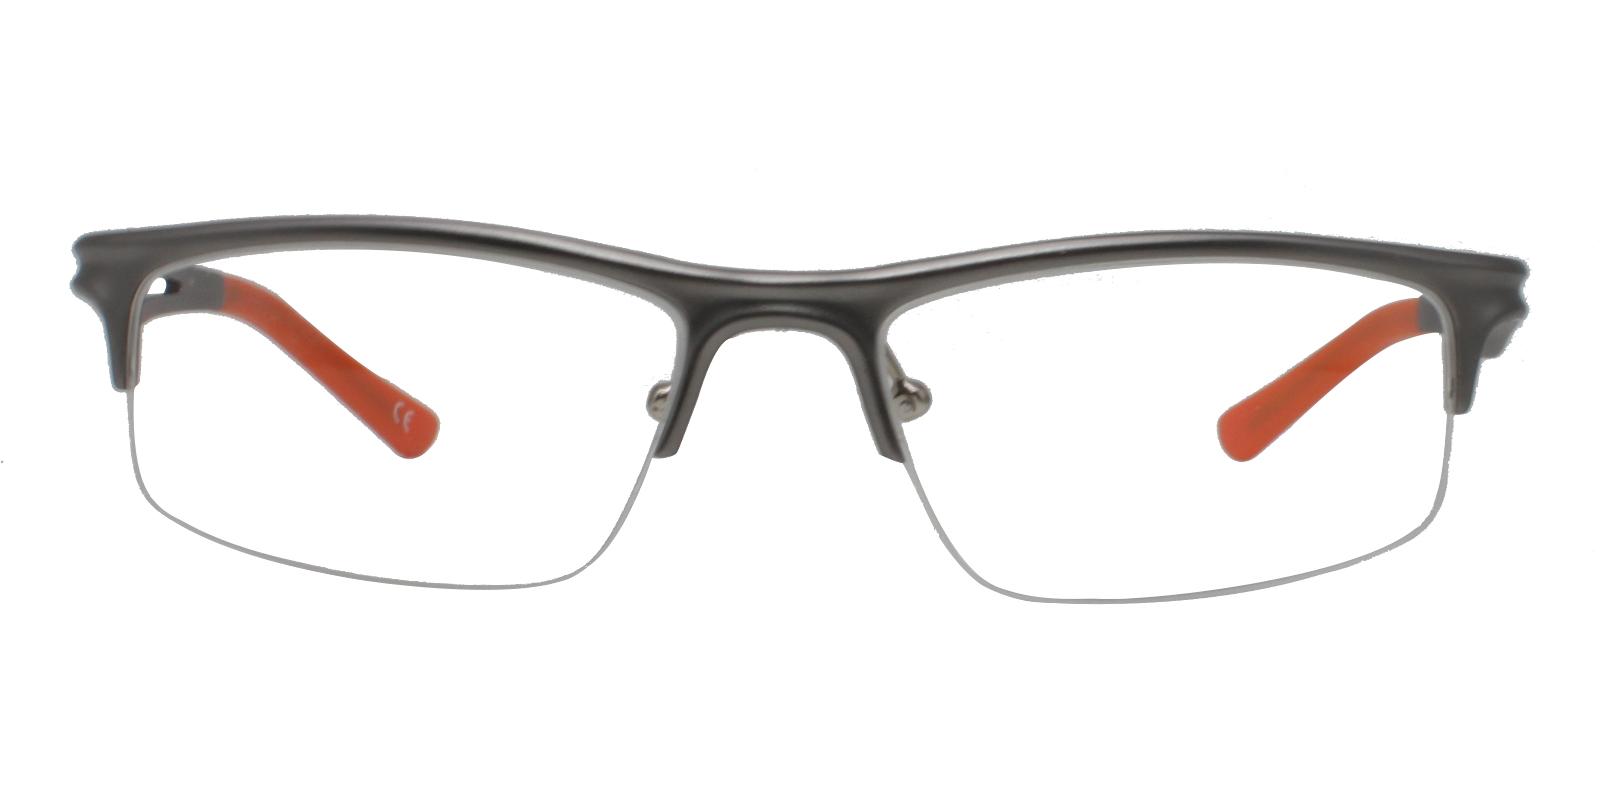 Apollo Gun Metal NosePads , SportsGlasses , SpringHinges Frames from ABBE Glasses